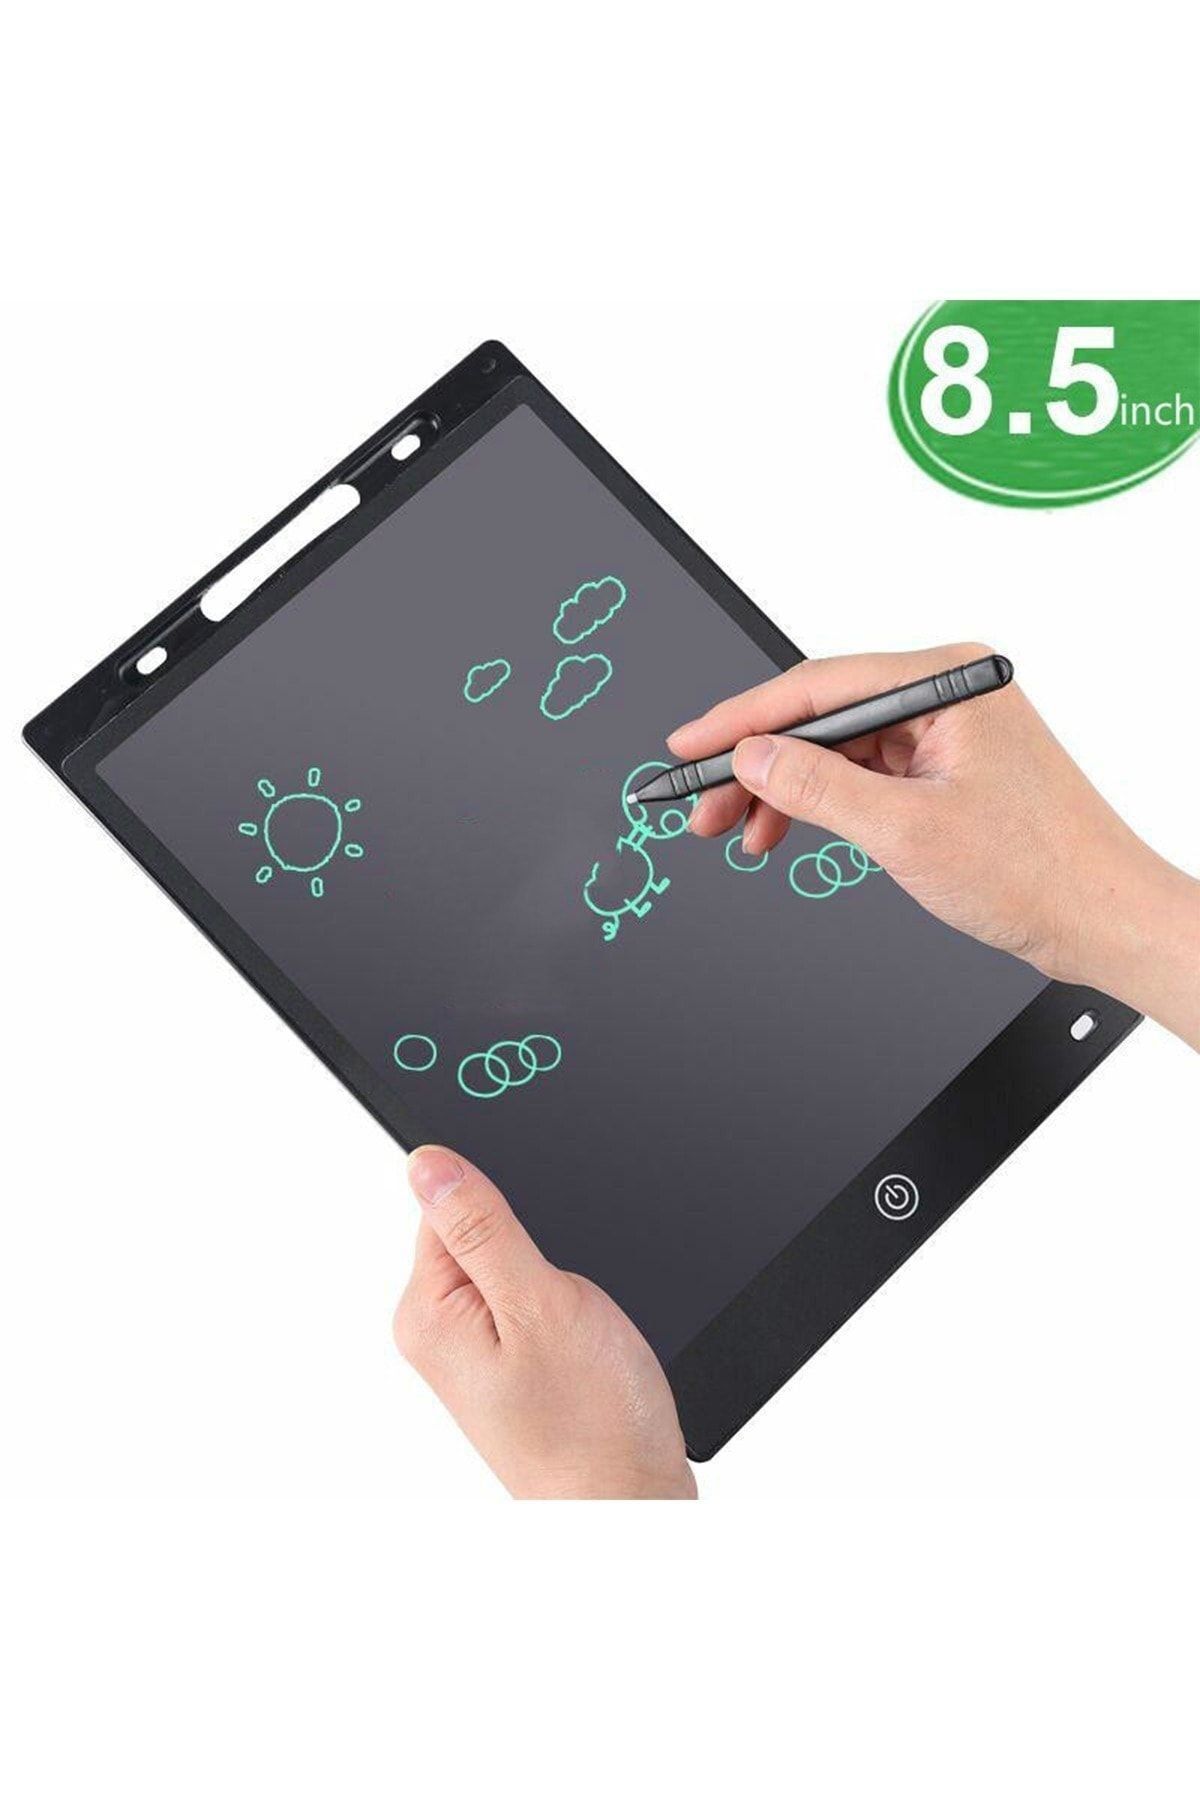 Benefse Çocuk Yazı Tableti 8.5 Inc Digital Lcd Ekranlı Ve Bilgisayar Kalemli Grafik Eğitim Tableti 1 Adet